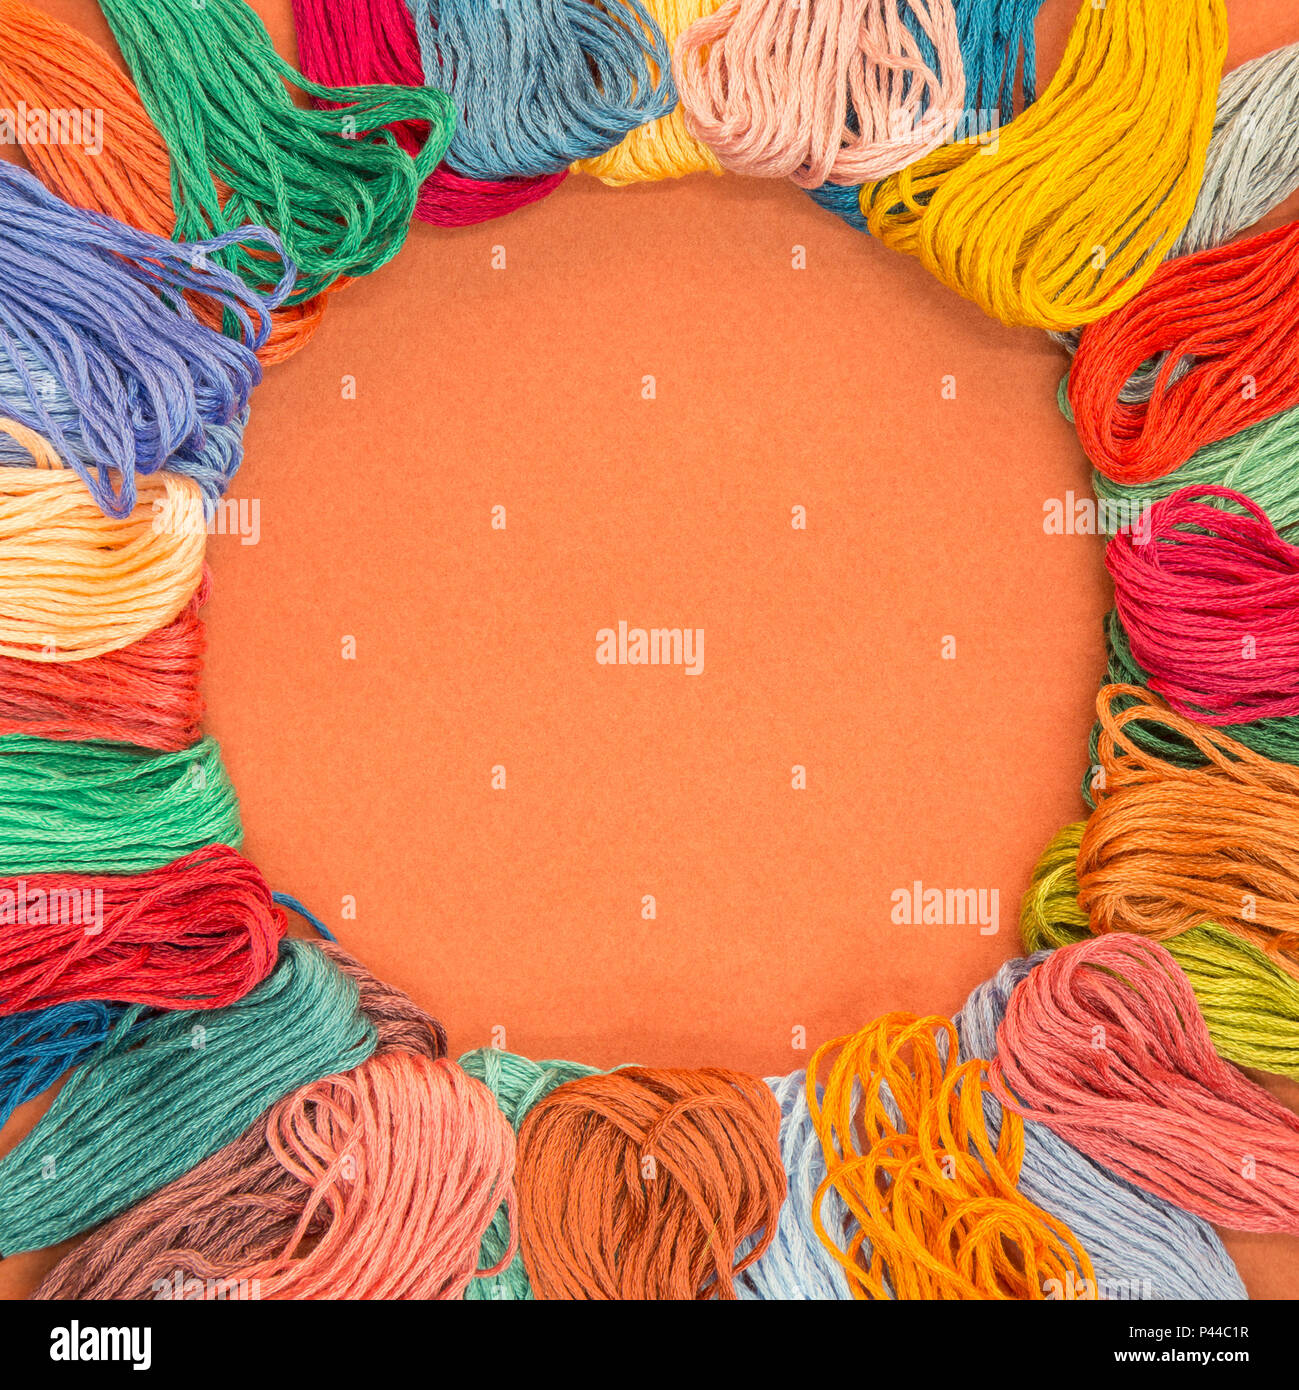 Muchas muestras de tejidos de lana sobre un papel con textura de fondo naranja con copia espacio en el medio. Foto de stock